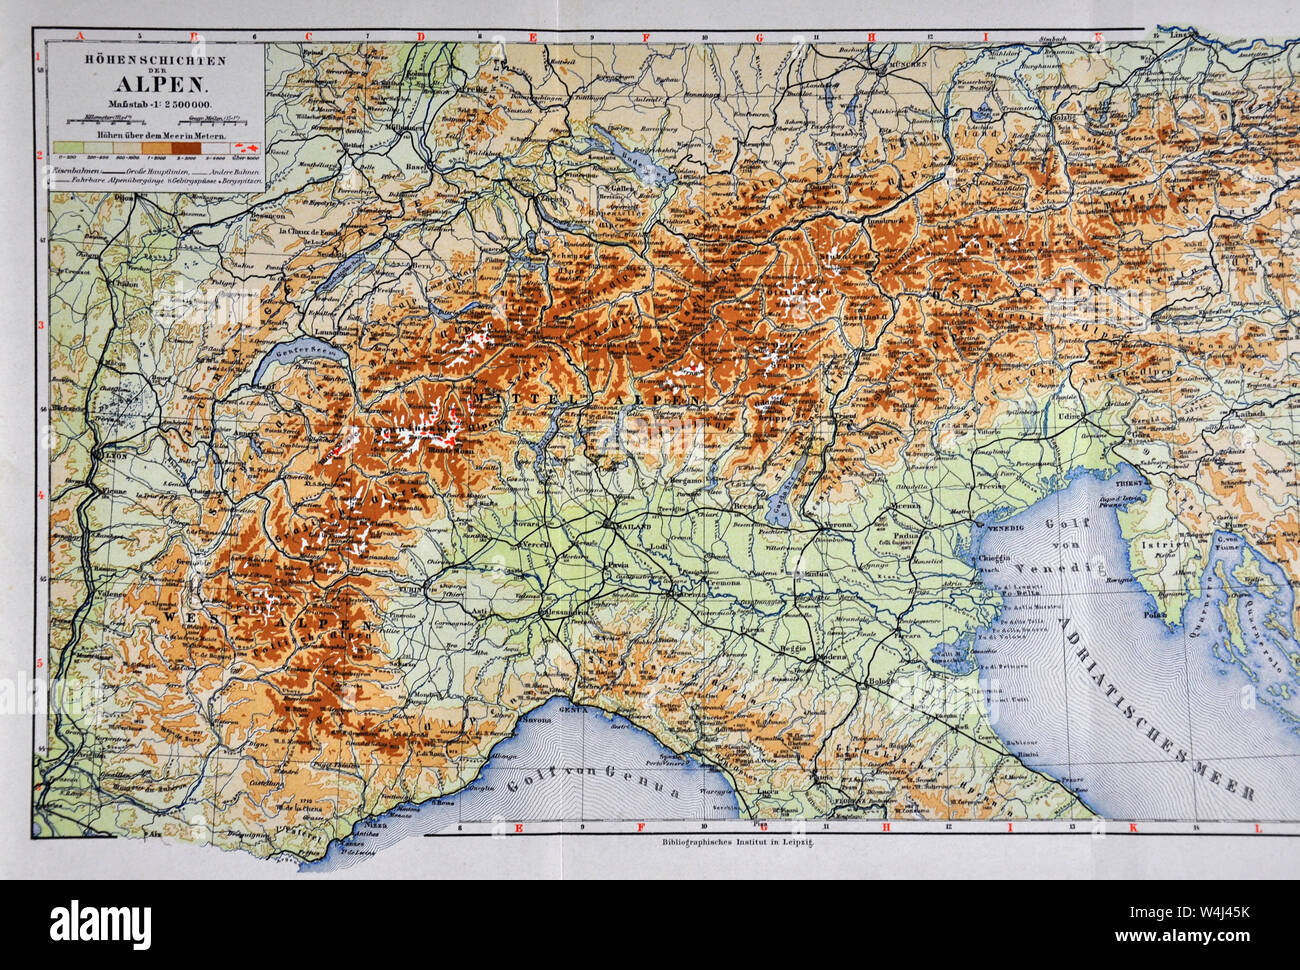 Mappa nord italia immagini e fotografie stock ad alta risoluzione - Alamy